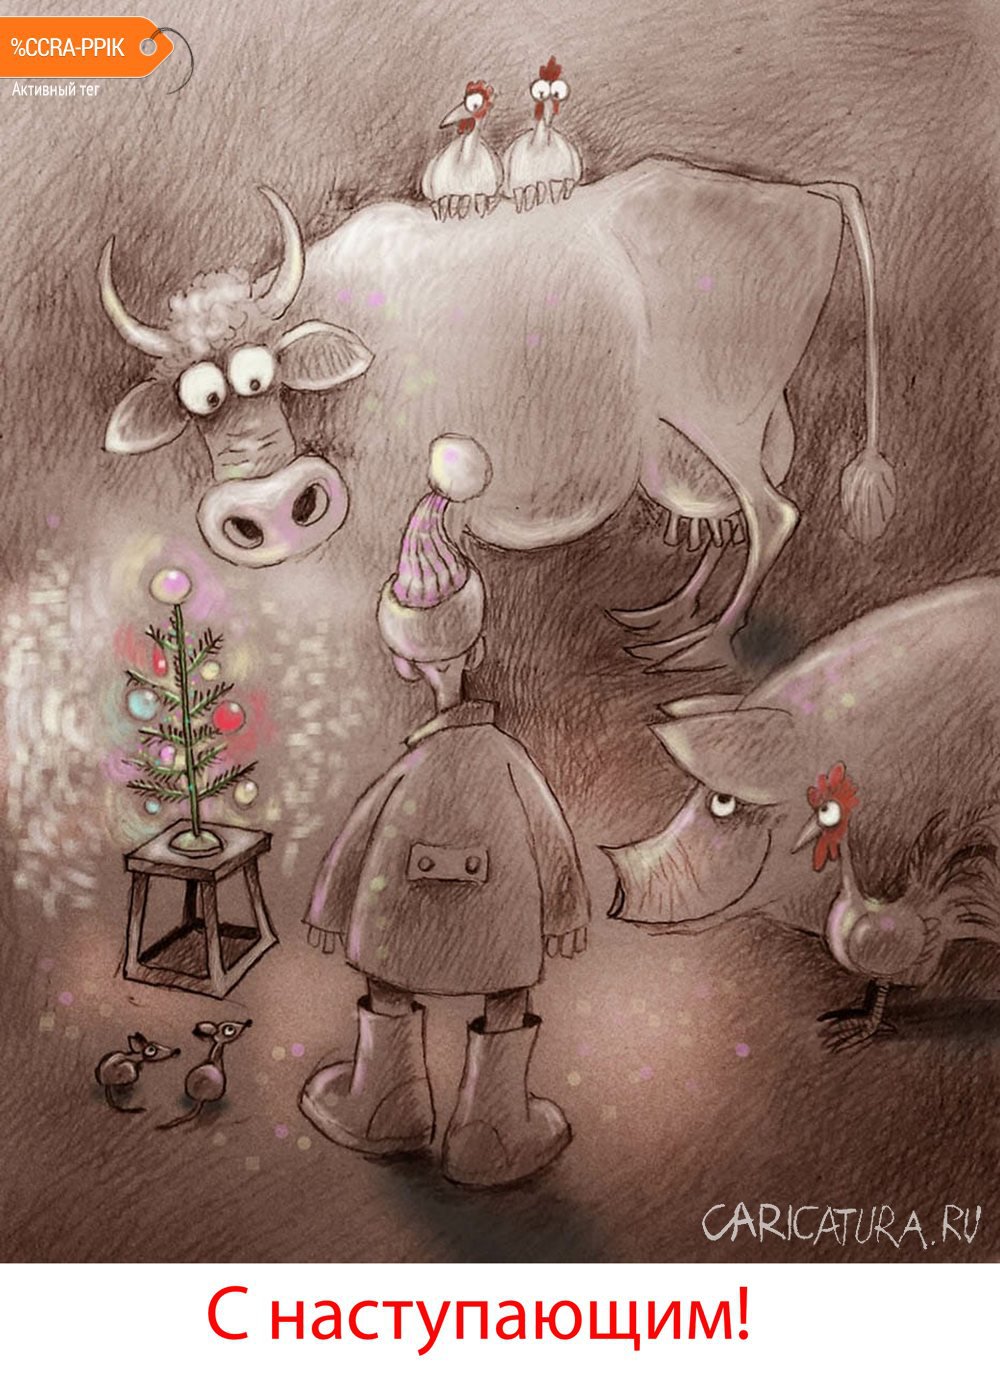 Карикатура "Из жизни фермера", Александр Попов